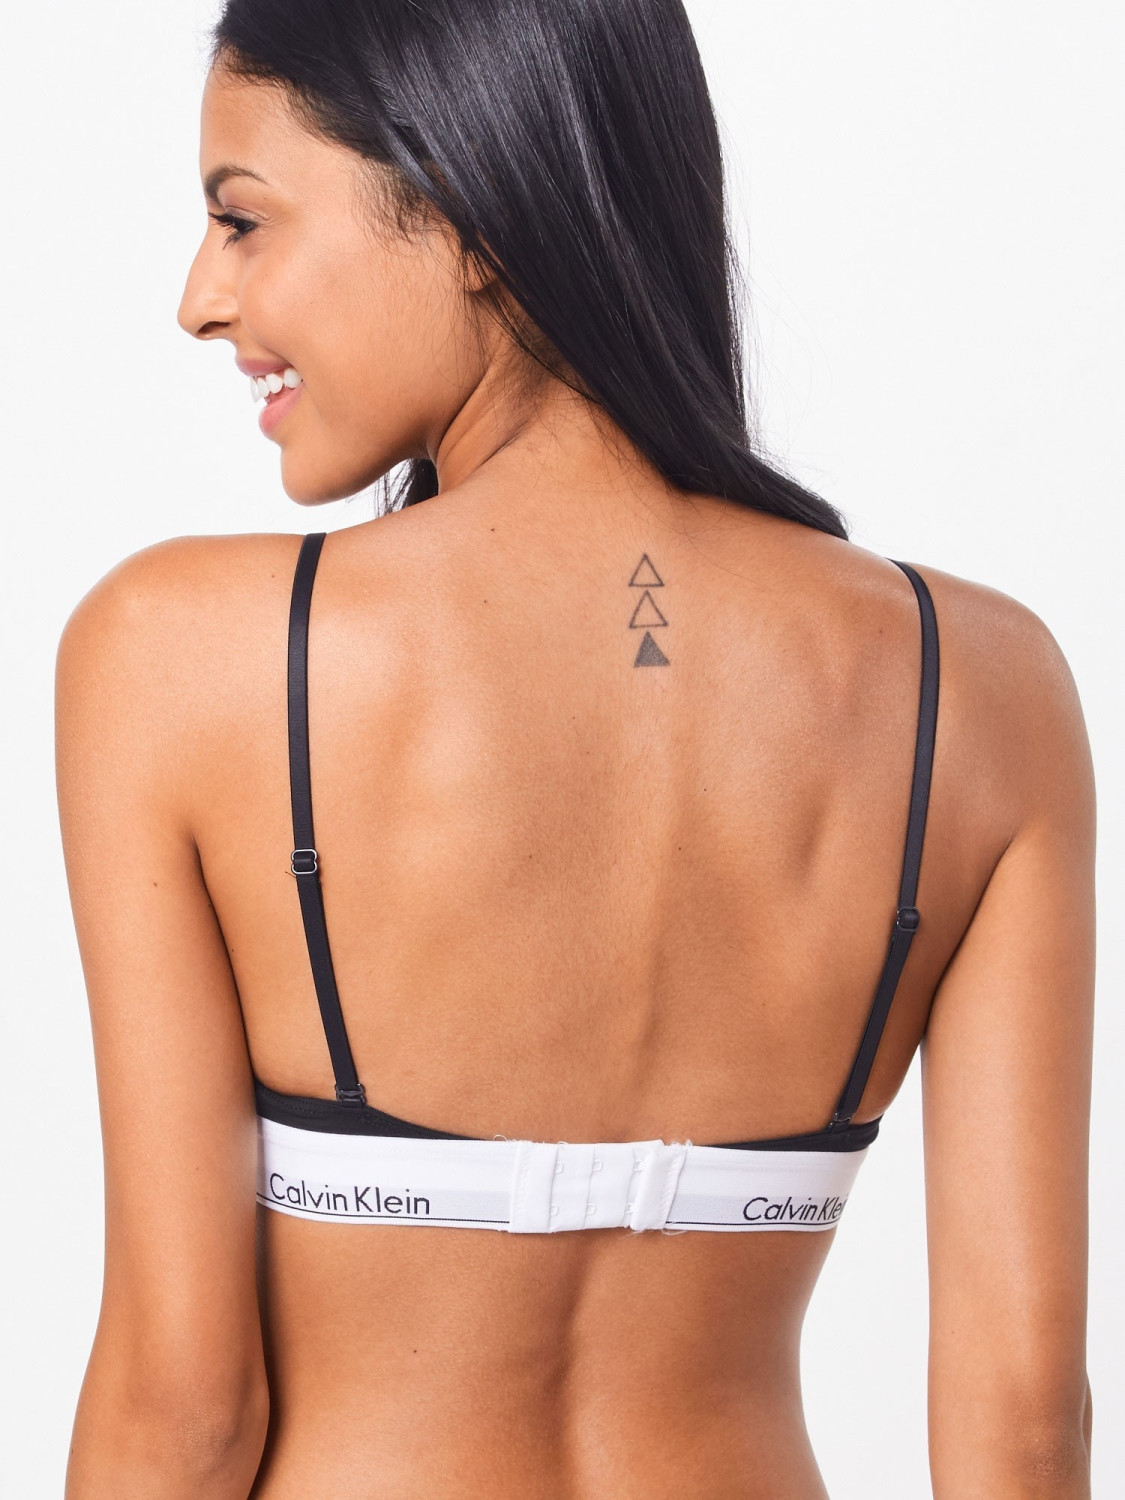 Calvin Klein Modern Cotton Triangle Bra black ab 28,99 € | Preisvergleich  bei